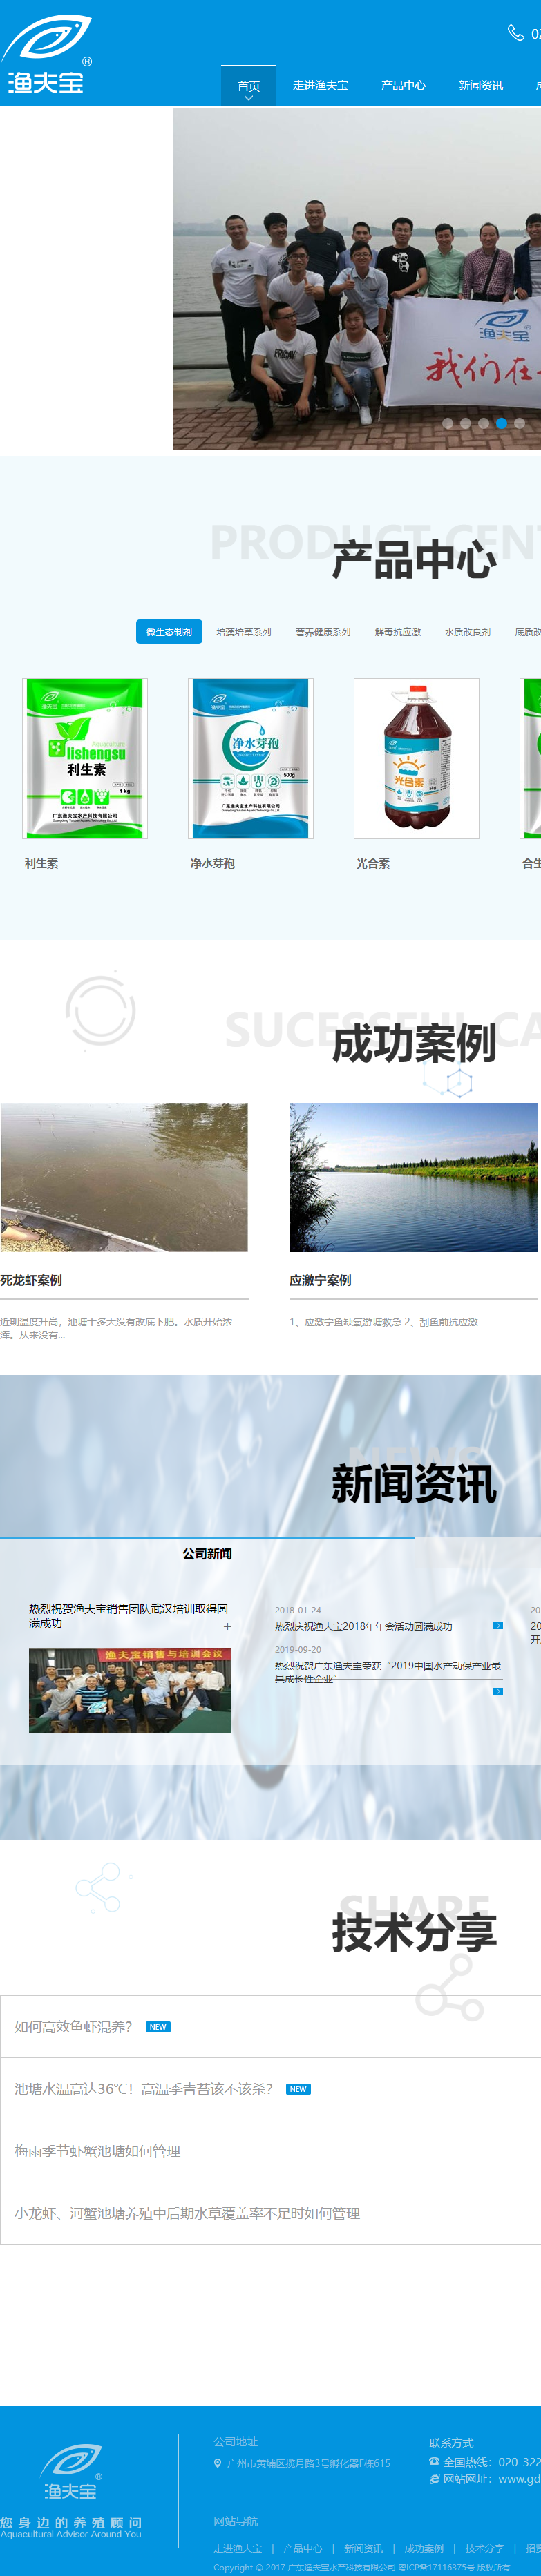 广东渔夫宝水产科技有限公司网站案例